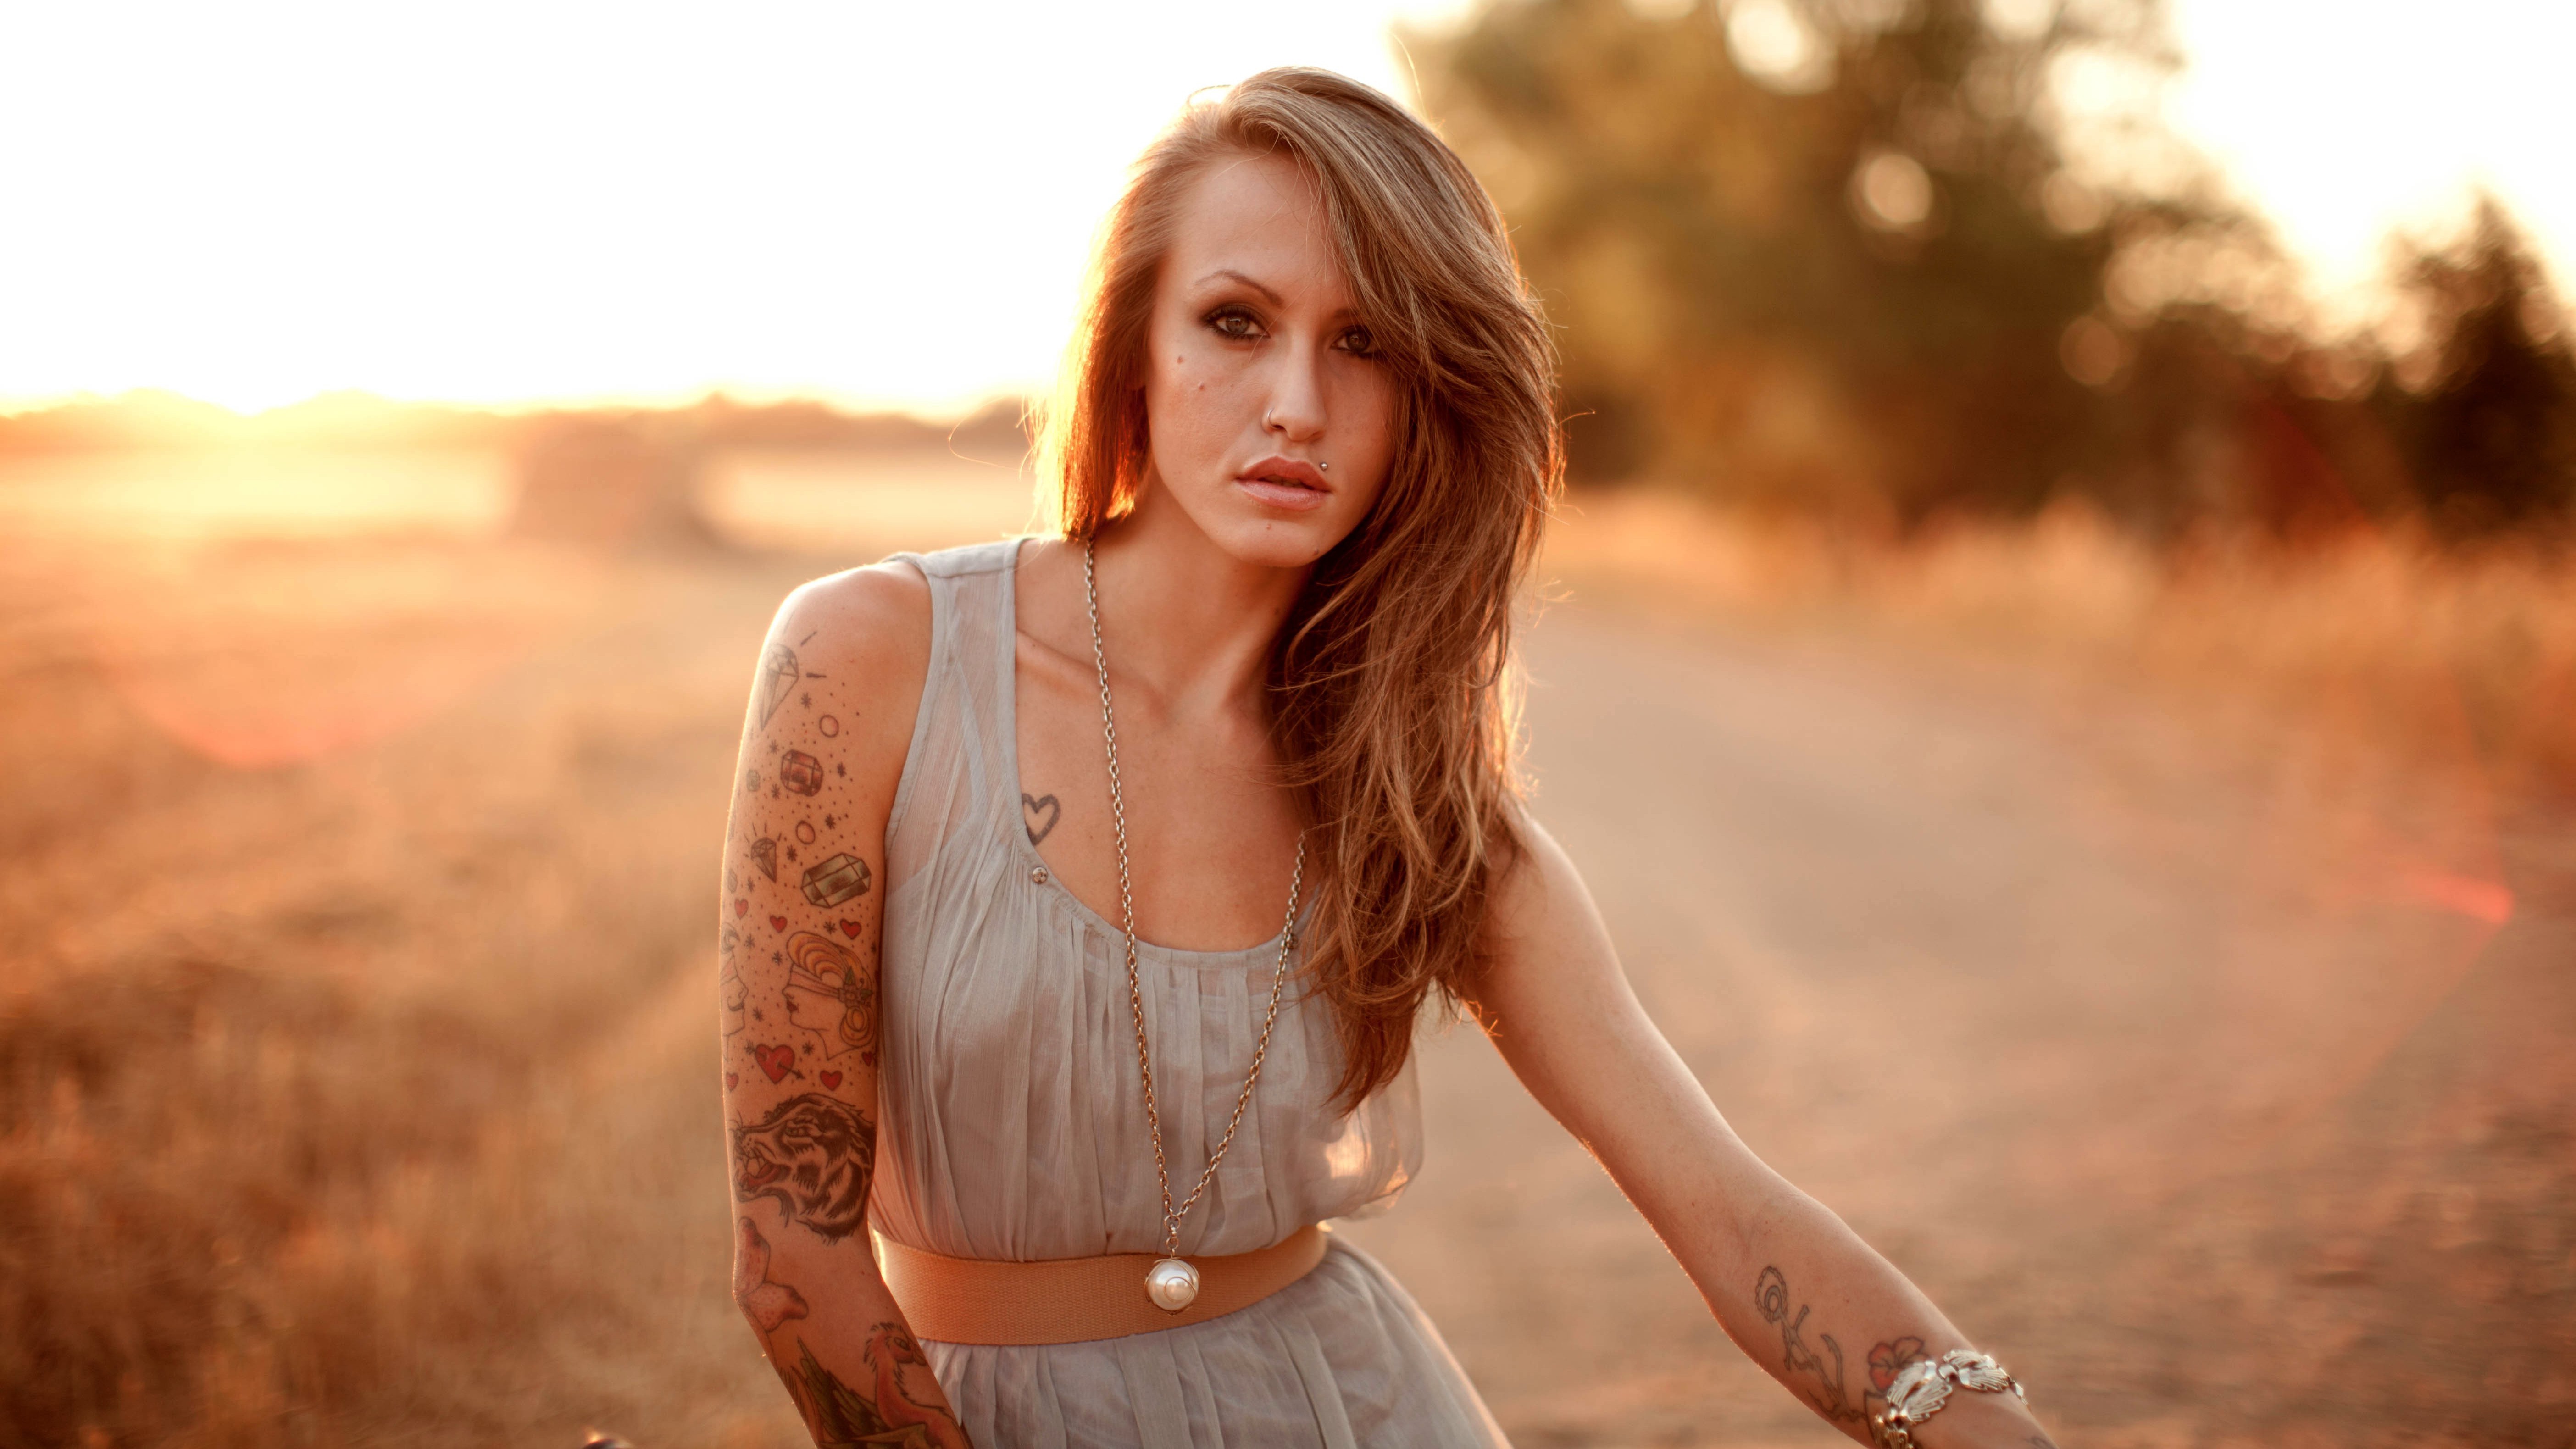 Бесплатное фото Девушка с татуировками на руках на фоне заката